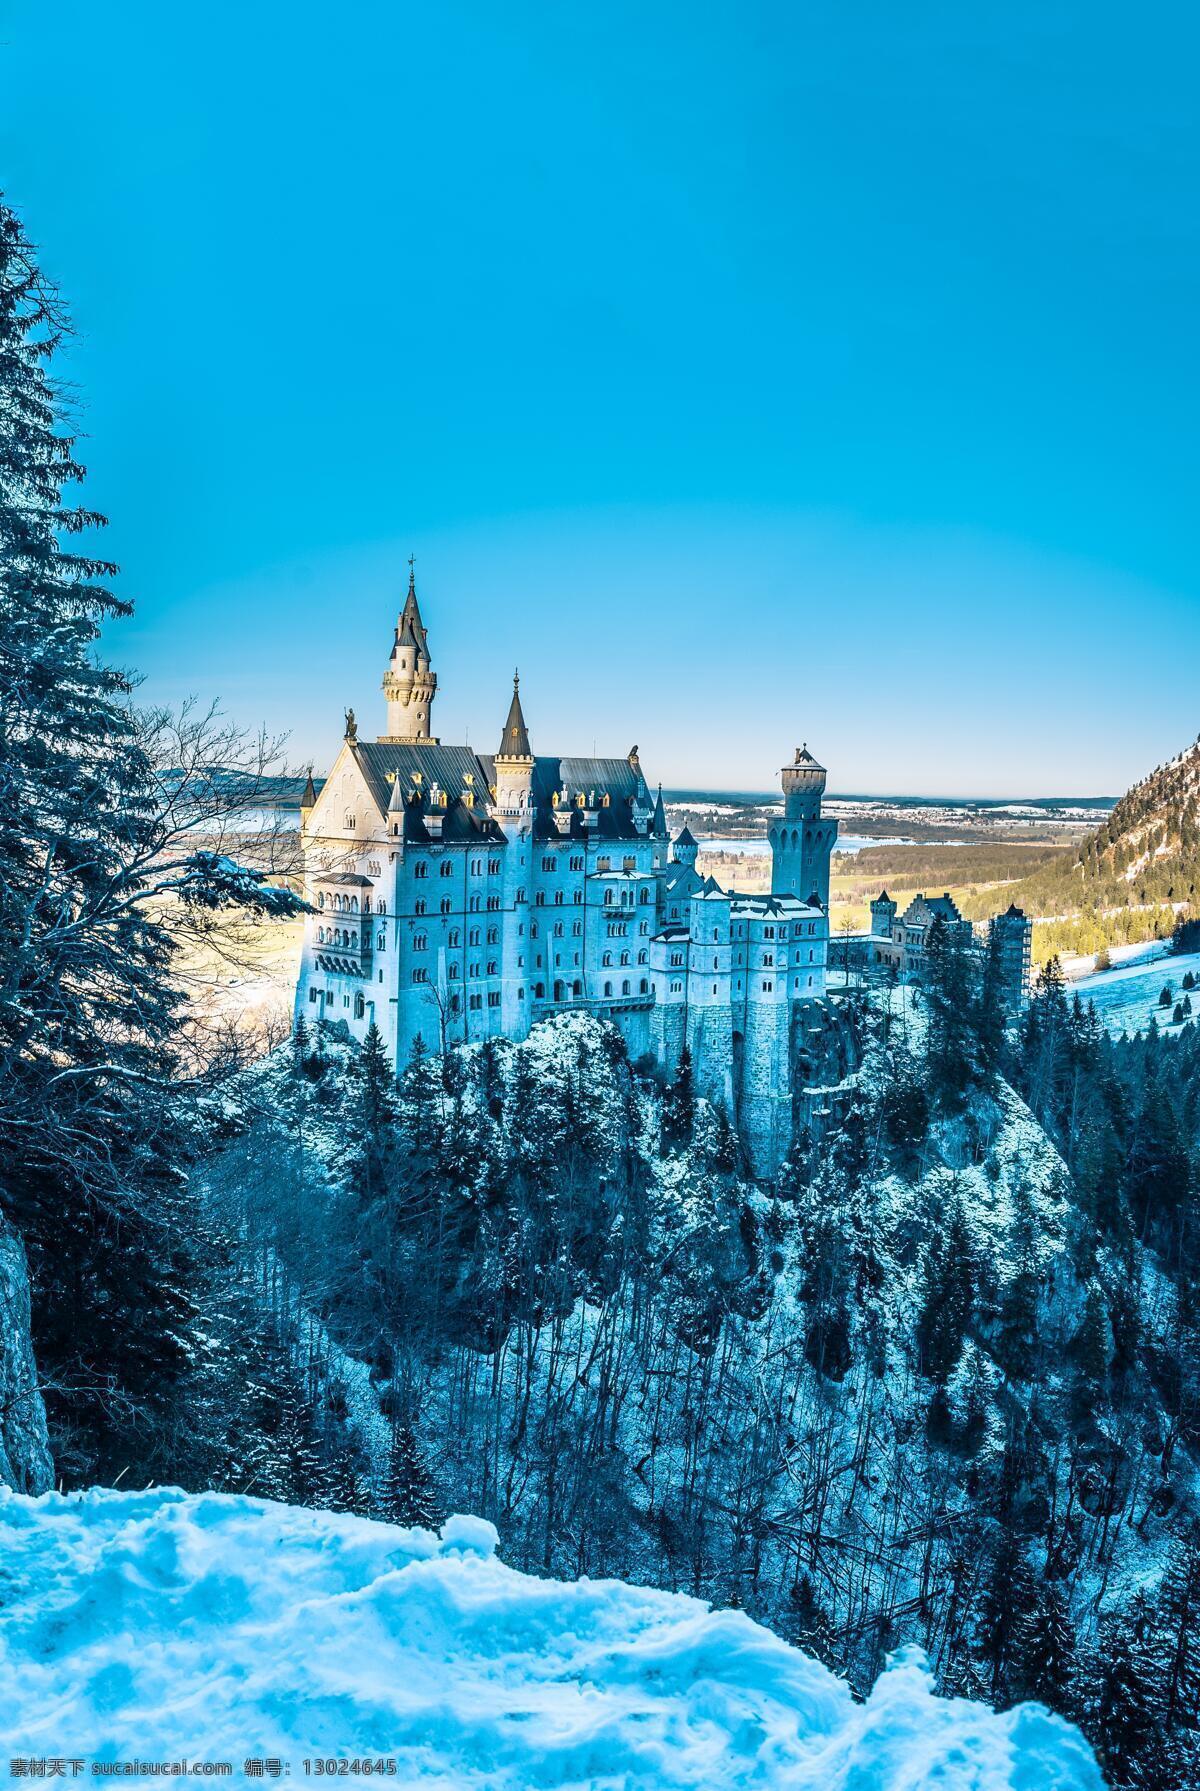 雪景之天鹅堡 冬日 德国 风景 天鹅堡 远景 自然风光 自然景观 自然风景